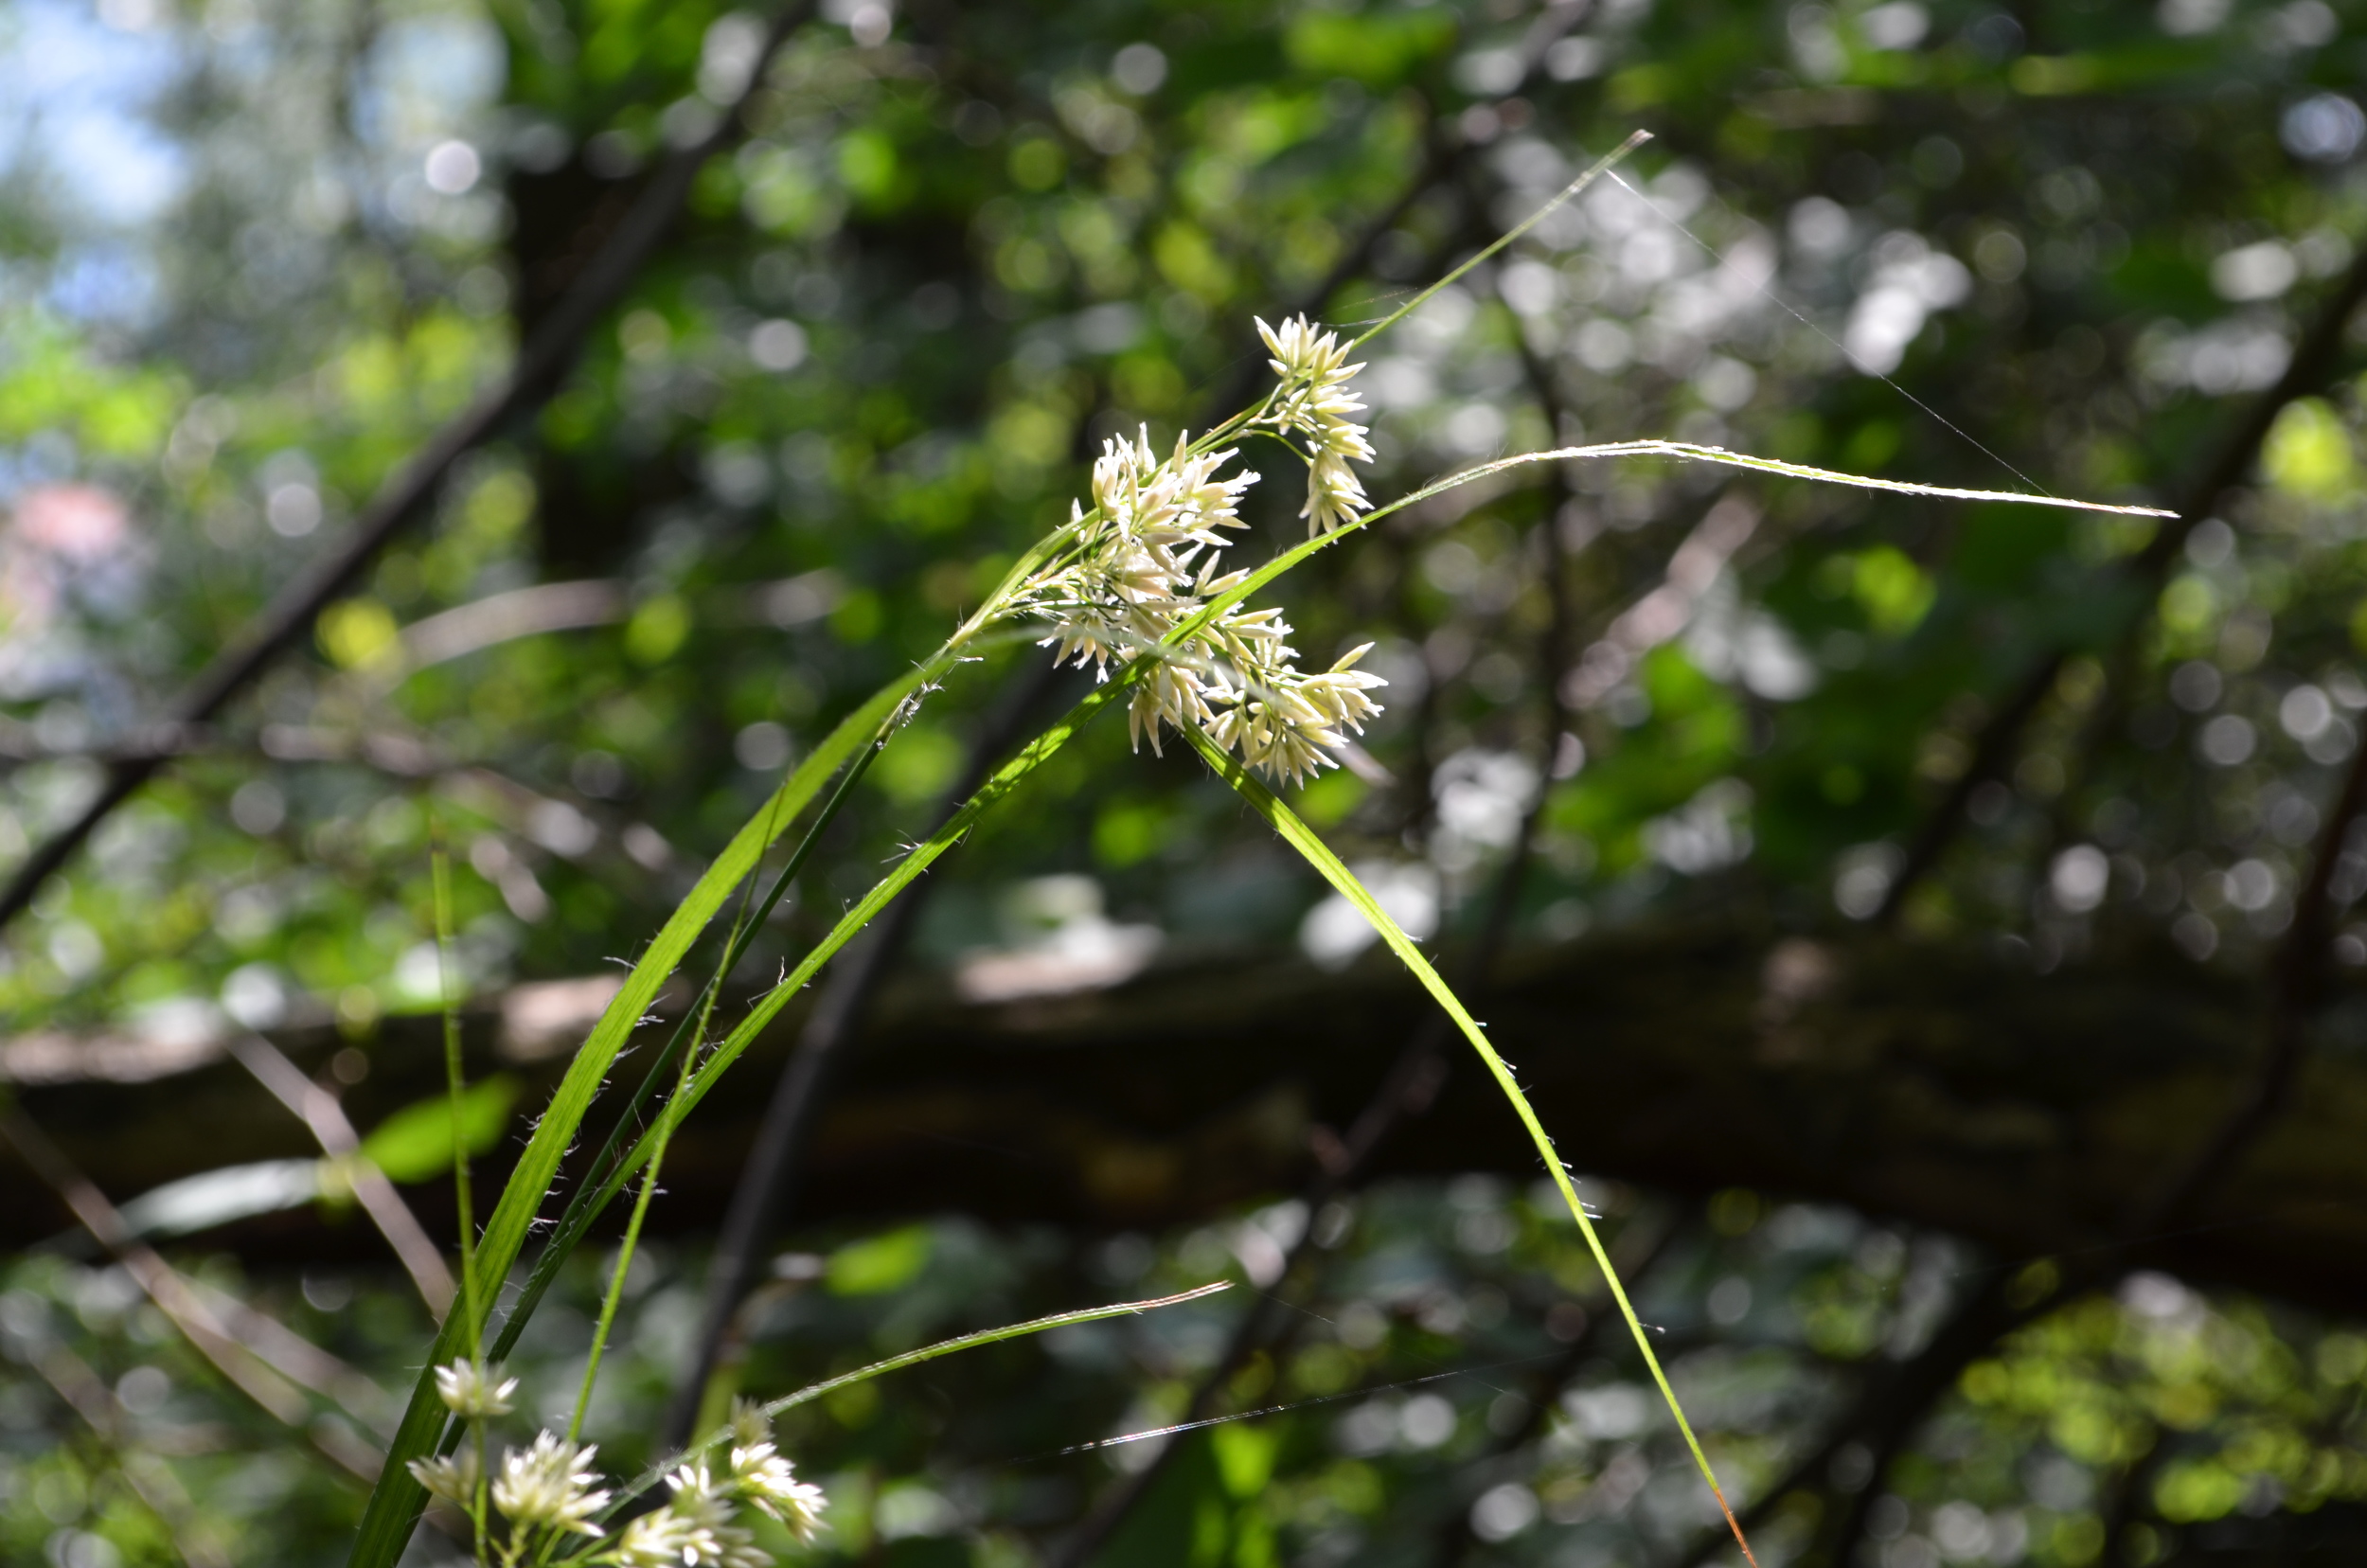   Erba       lucciola       maggiore;  Luzula nivea  (Juncaceae)     
  
 
 
 
 
 
 
 
 
 
 
 
 
 
 
 
 
 
 
 
 
 
 
 
 
 
 
 
 
 
 
 
 
 
 
 
 
 
 
 
 
 
 
 
 
 
 
 
 
 
 
 
 
 
 
 
 
 
 
 
 
 
 
 
 
 
 
 
 
 
 
 
 
 
 
 
 
 
 
 
 
 
 
 
 
 
 
 
 
 